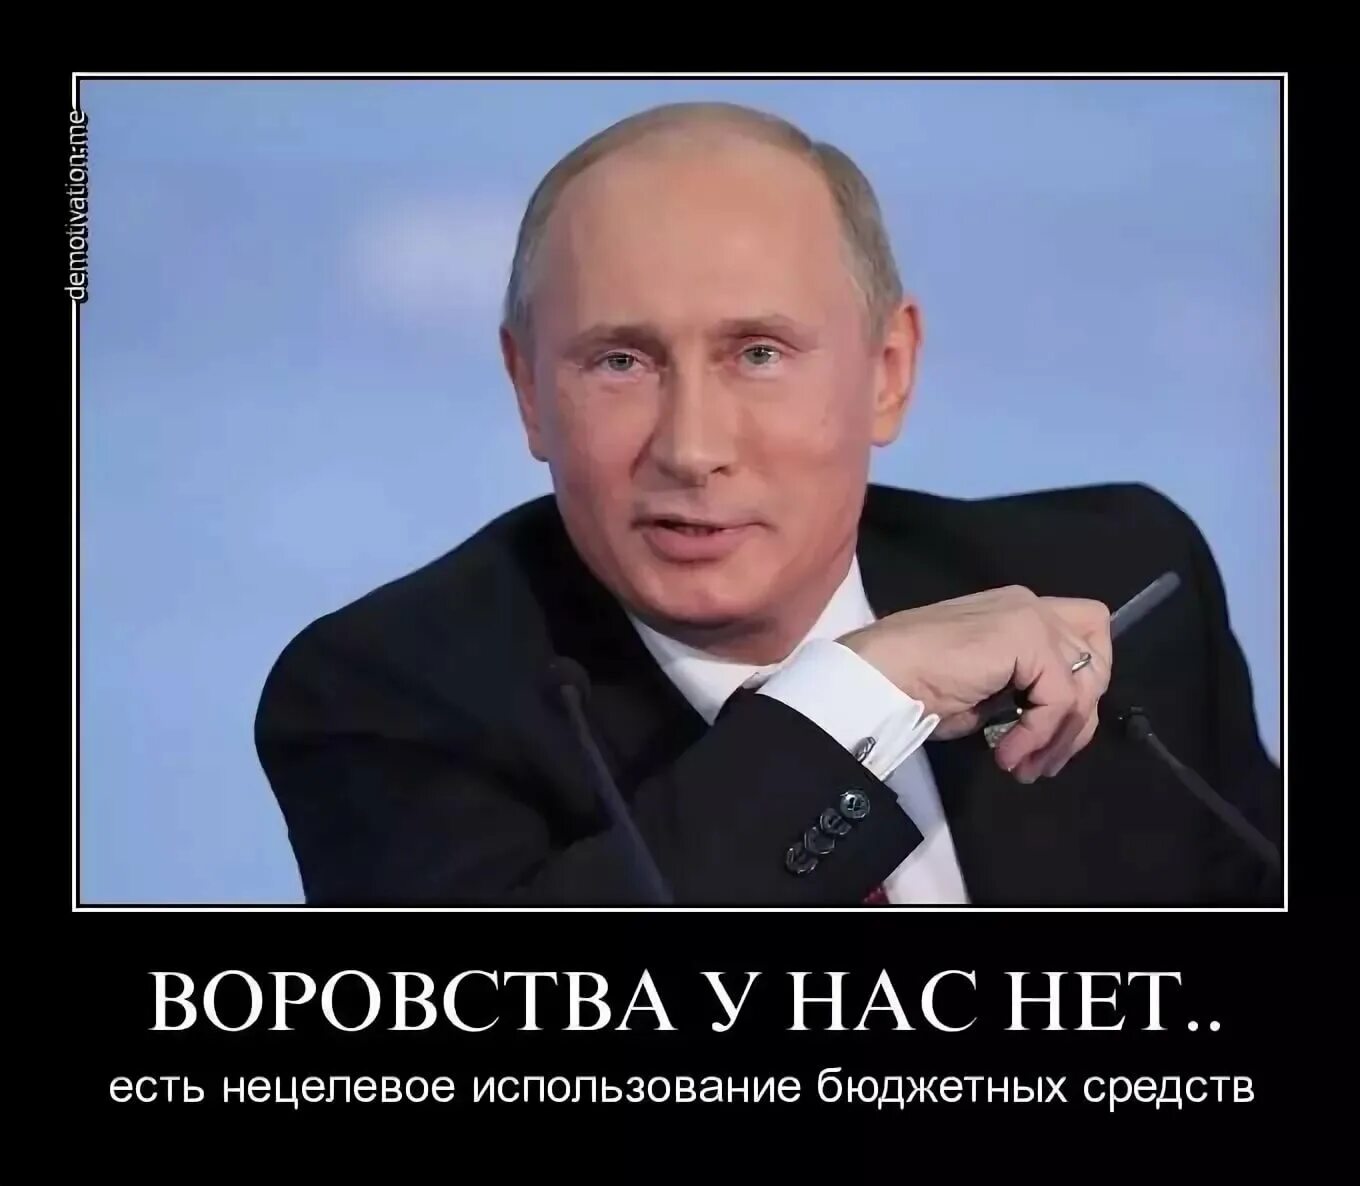 В России воруют. Демотиваторы против Путина. Мемы про Путина.